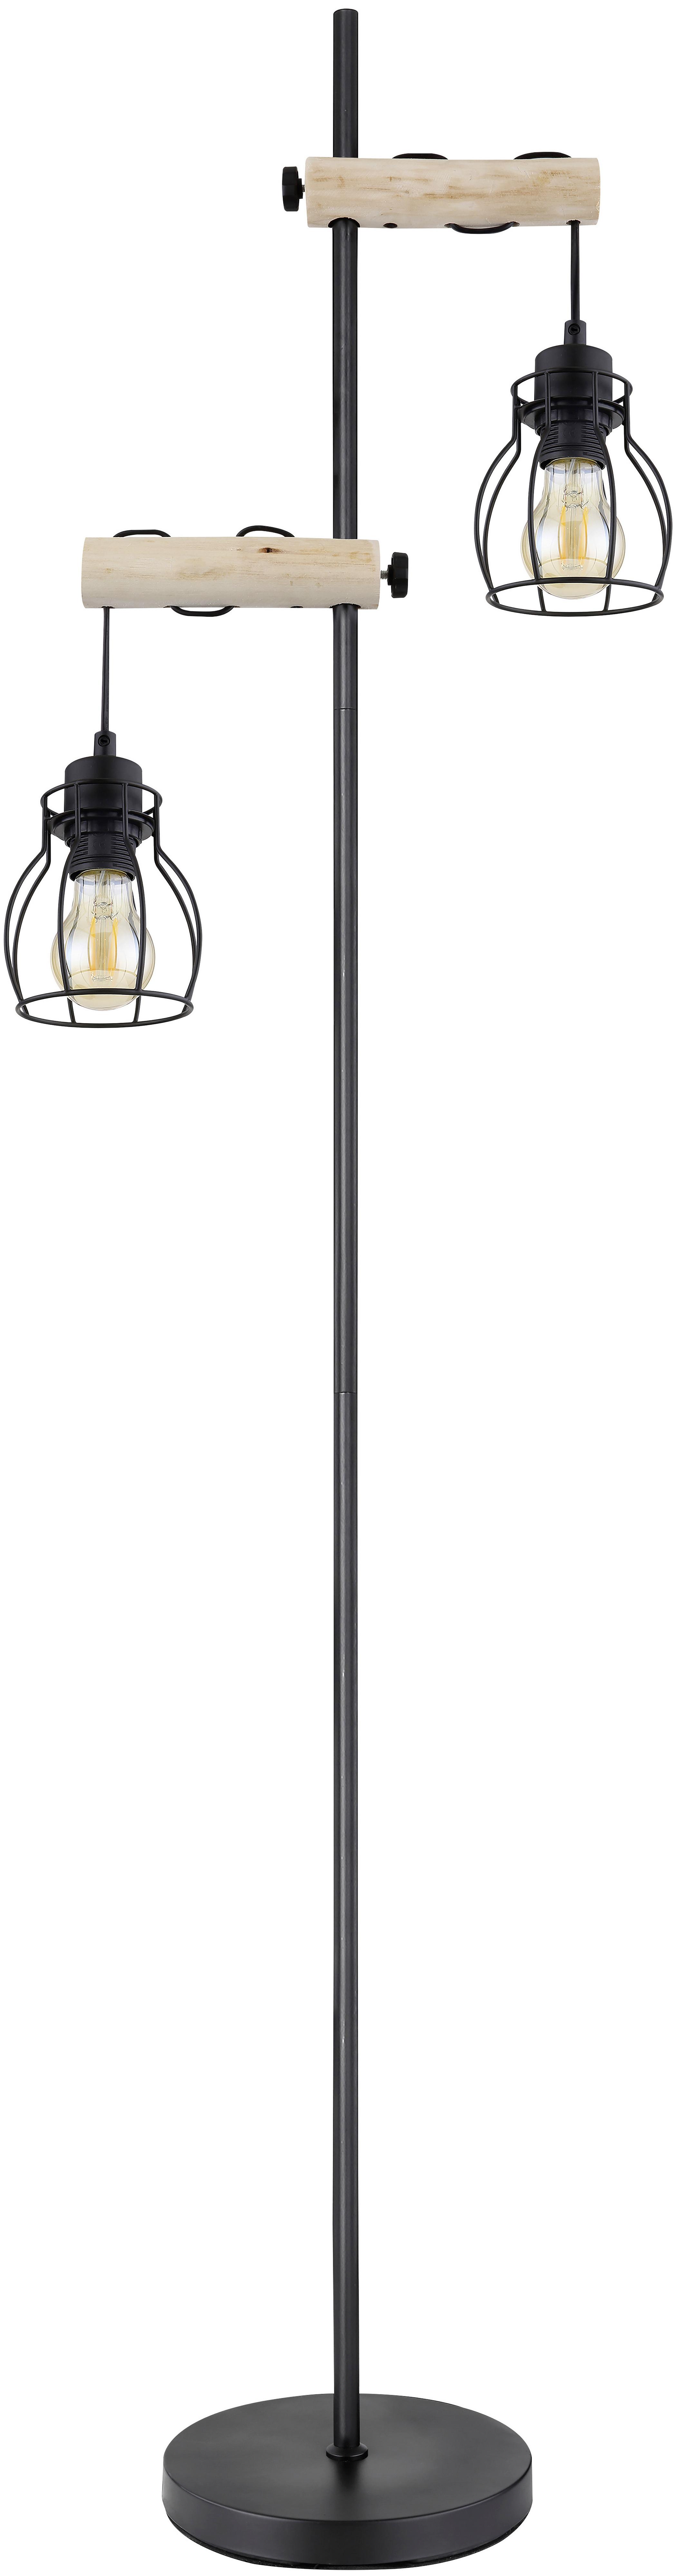 Stojacia Lampa Aaliyah, Bez 2x E27 Max. 40w - prírodné farby/čierna, Romantický / Vidiecky, kov/drevo (23/150cm) - Modern Living